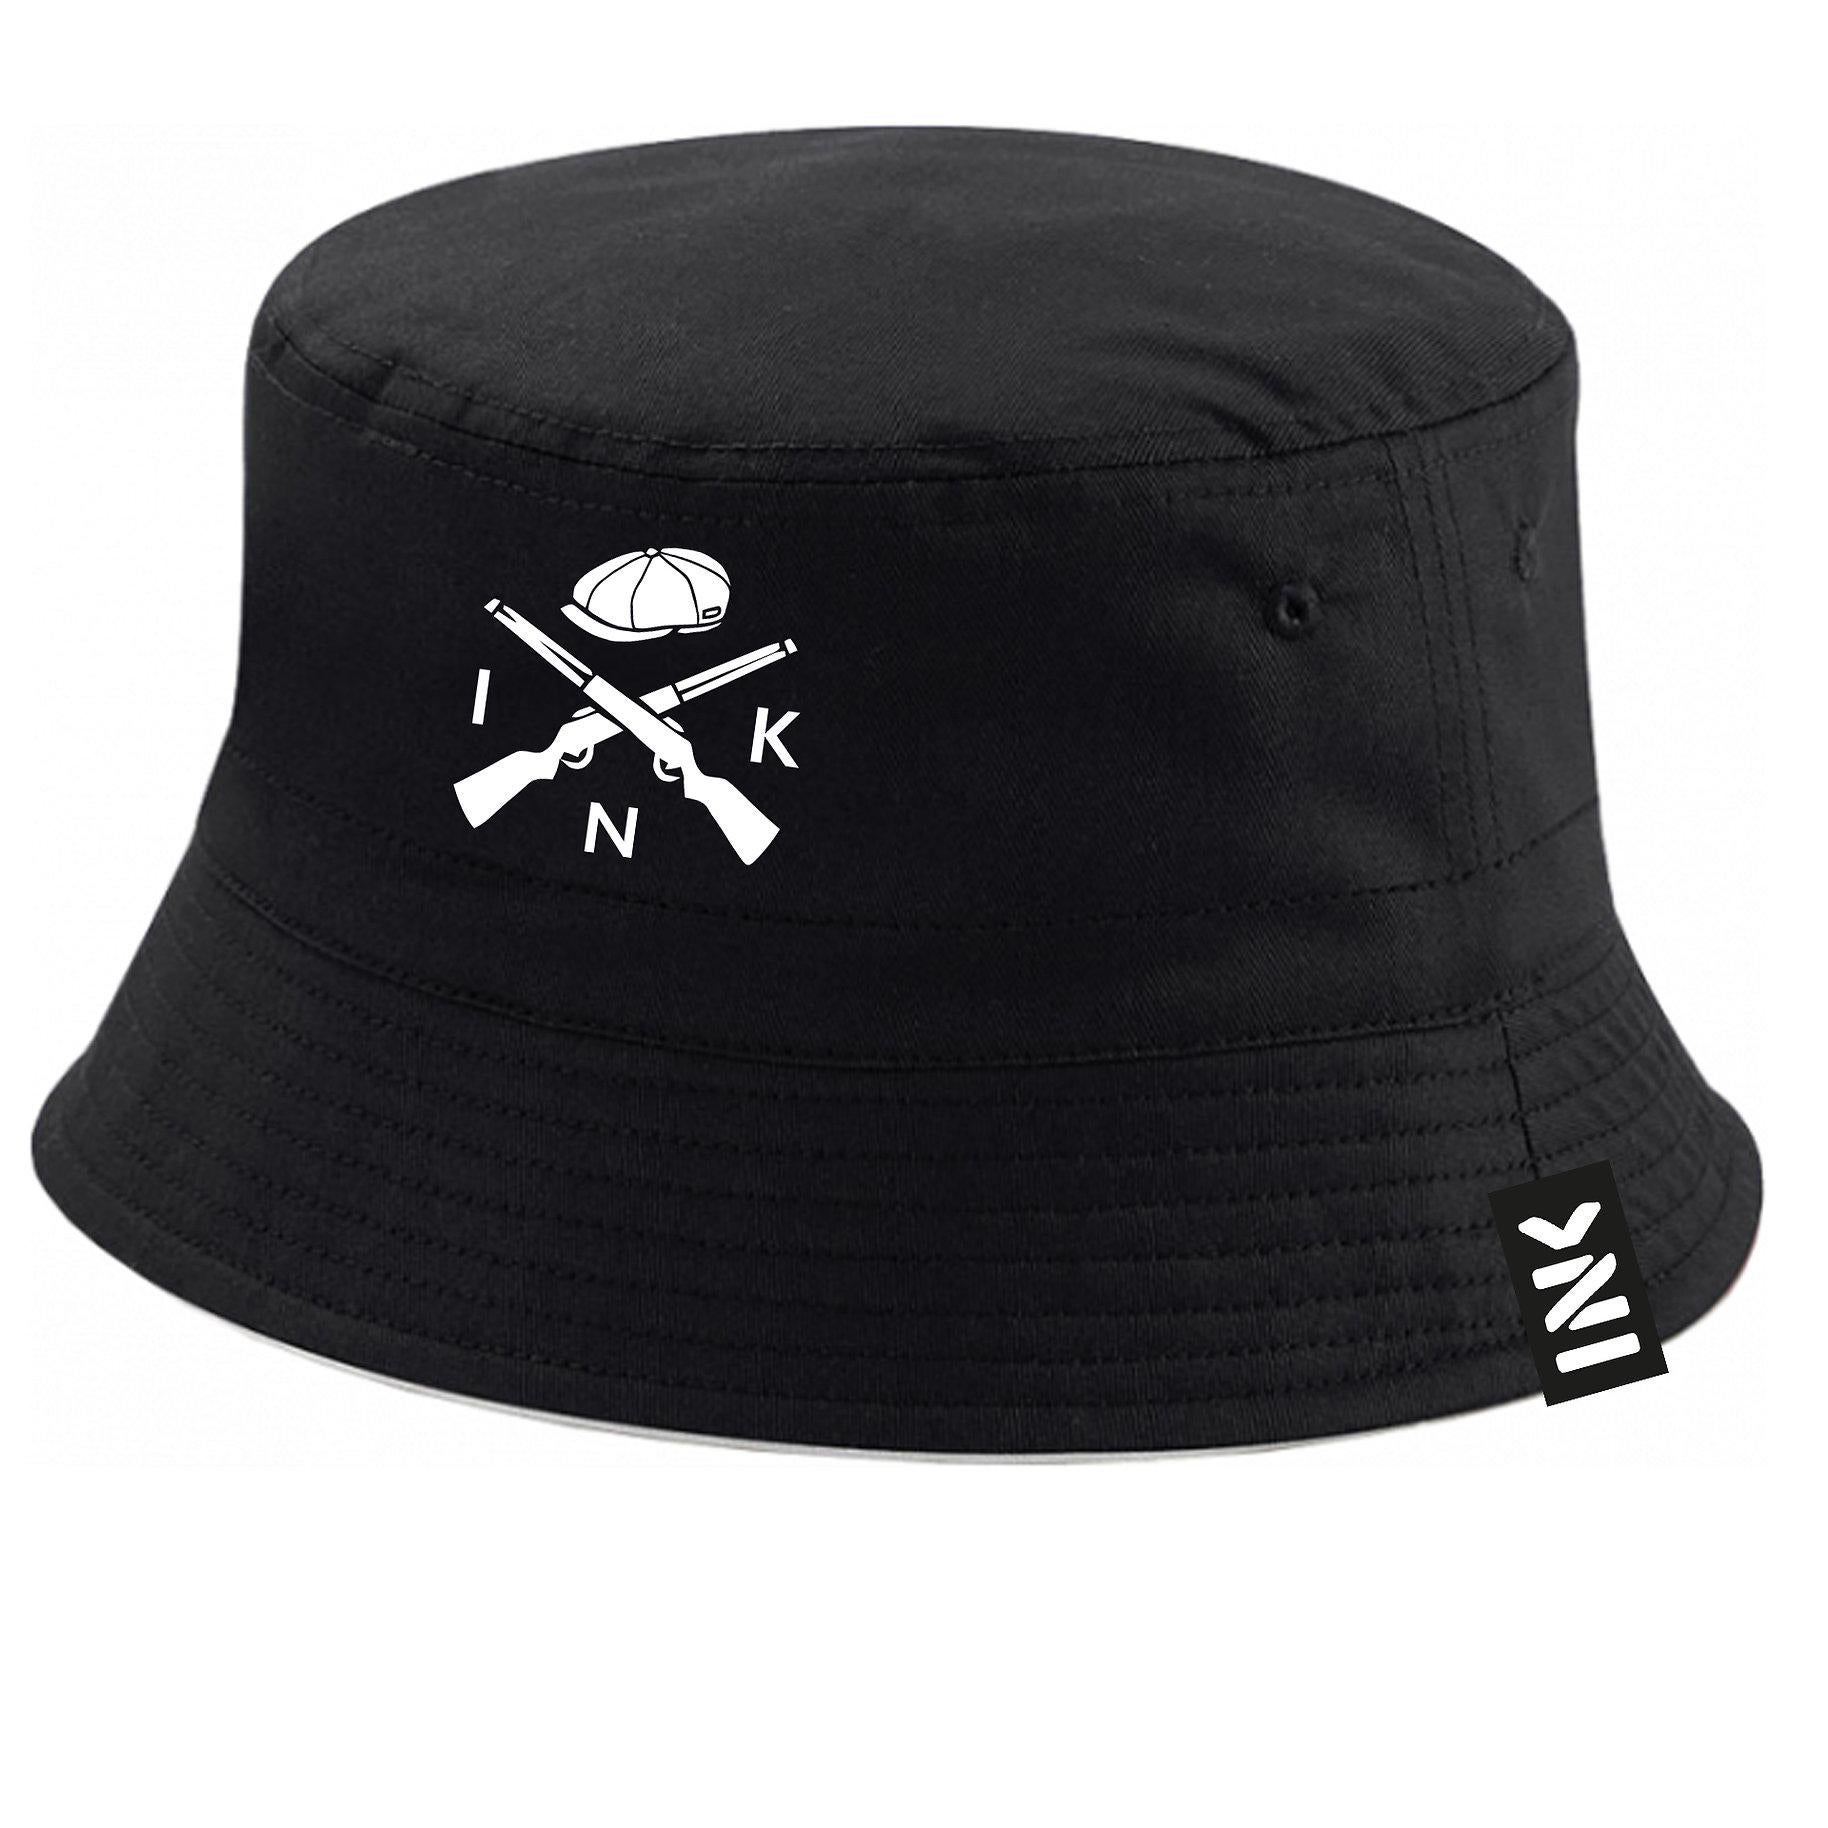 Women's or Men's Black hat - cap NWOT